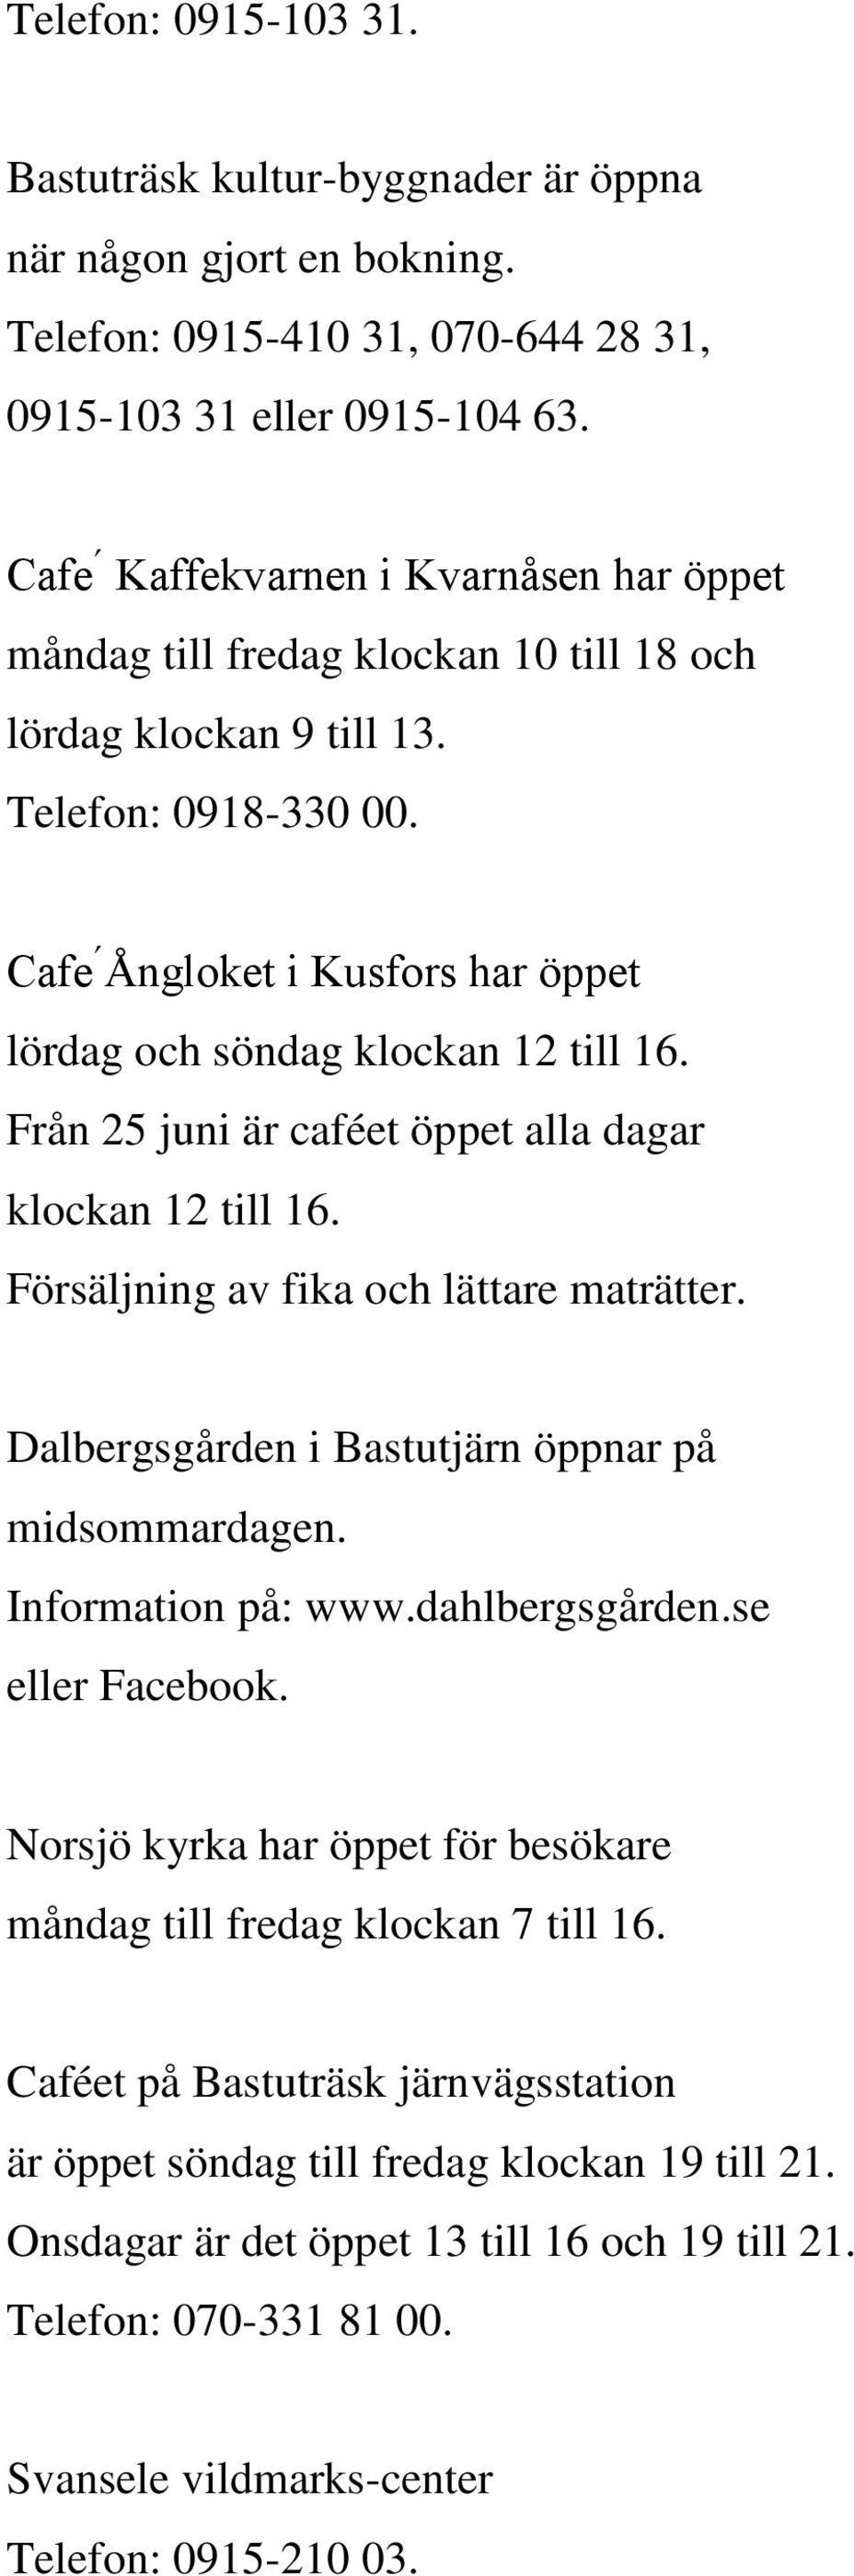 Cafe Ǻngloket i Kusfors har öppet lördag och söndag klockan 12 till 16. Från 25 juni är caféet öppet alla dagar klockan 12 till 16. Försäljning av fika och lättare maträtter.